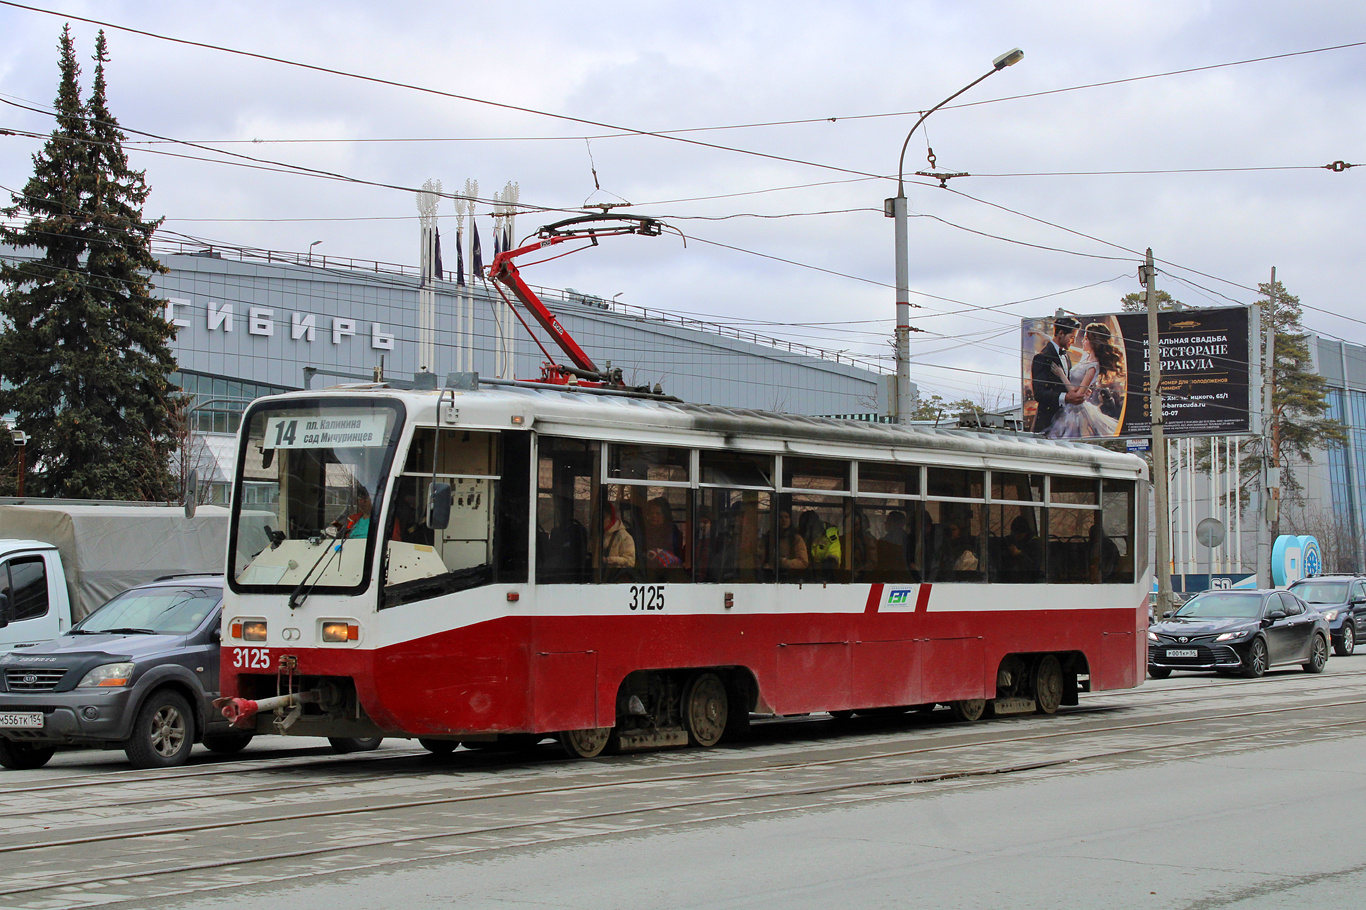 Новосибирск, 71-619К № 3125